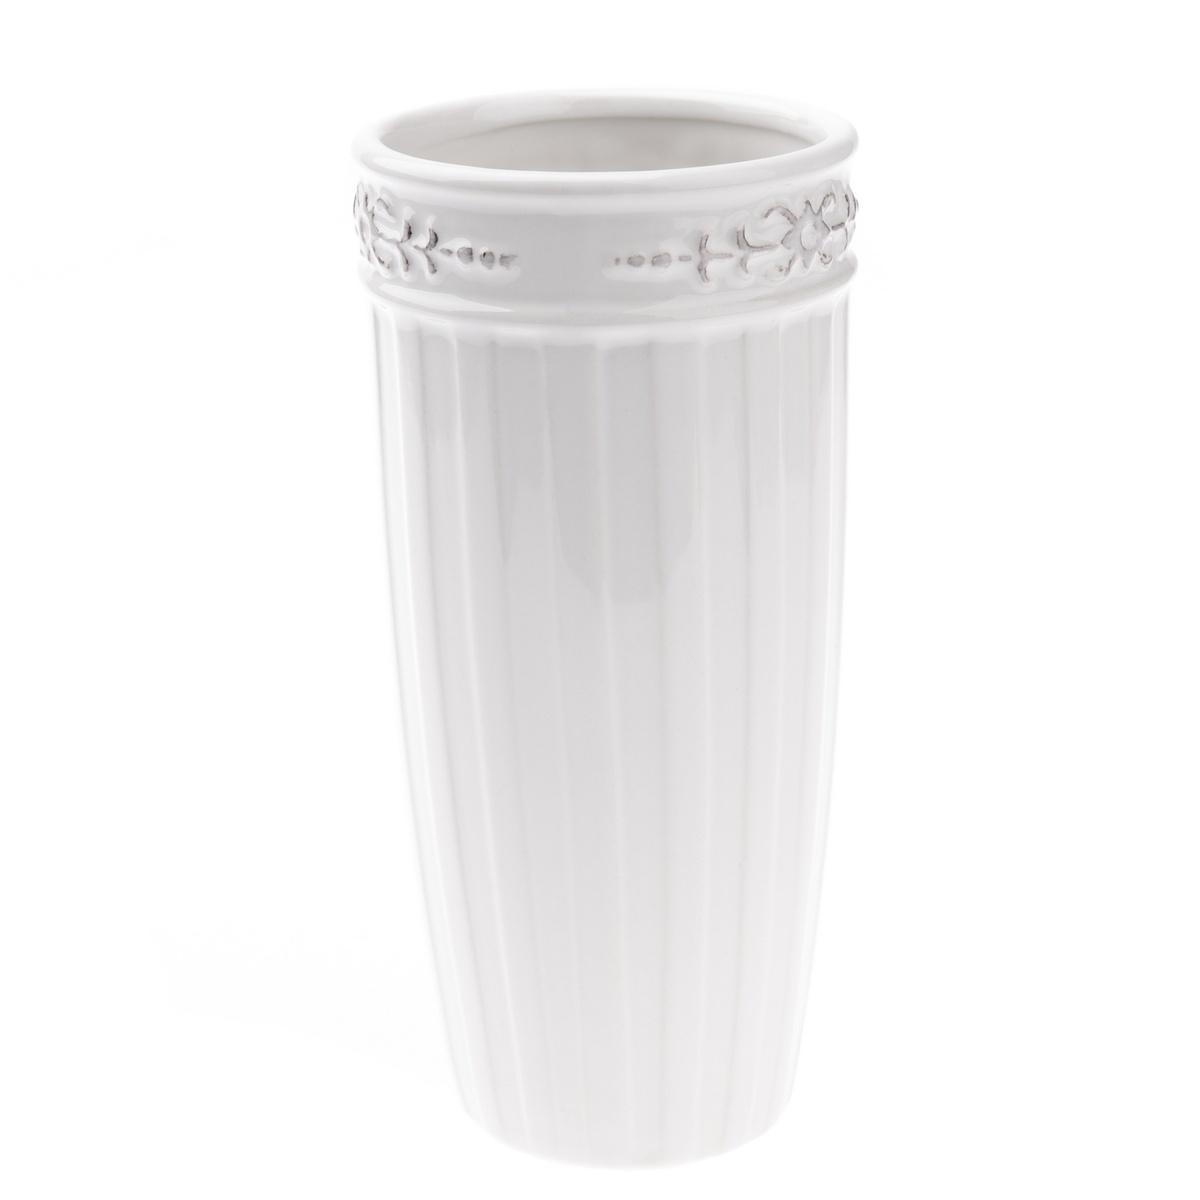 Keramická váza Irma bílá, 9,5 x 20 cm